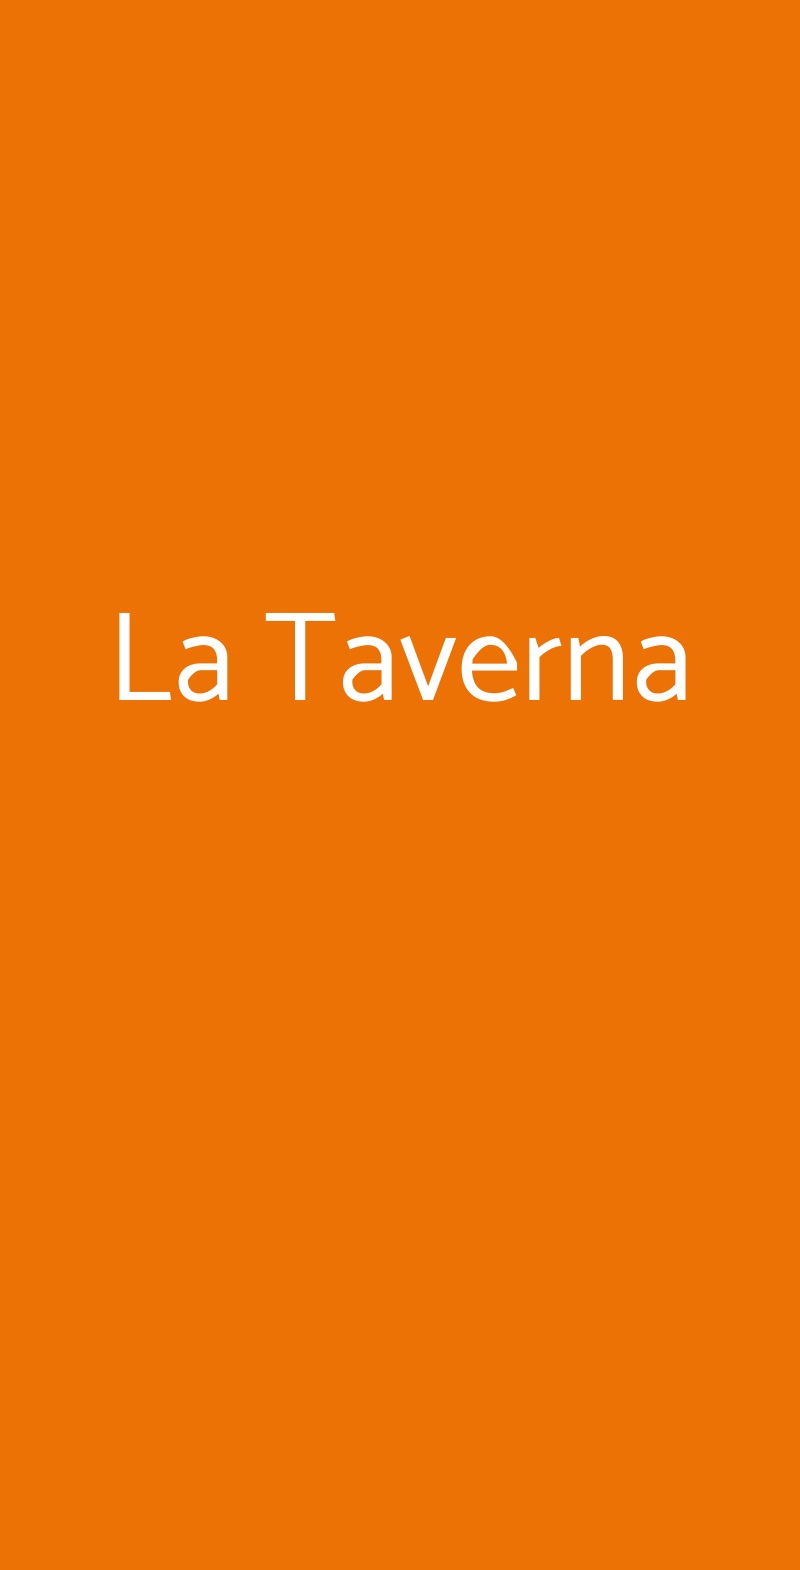 La Taverna Perugia menù 1 pagina